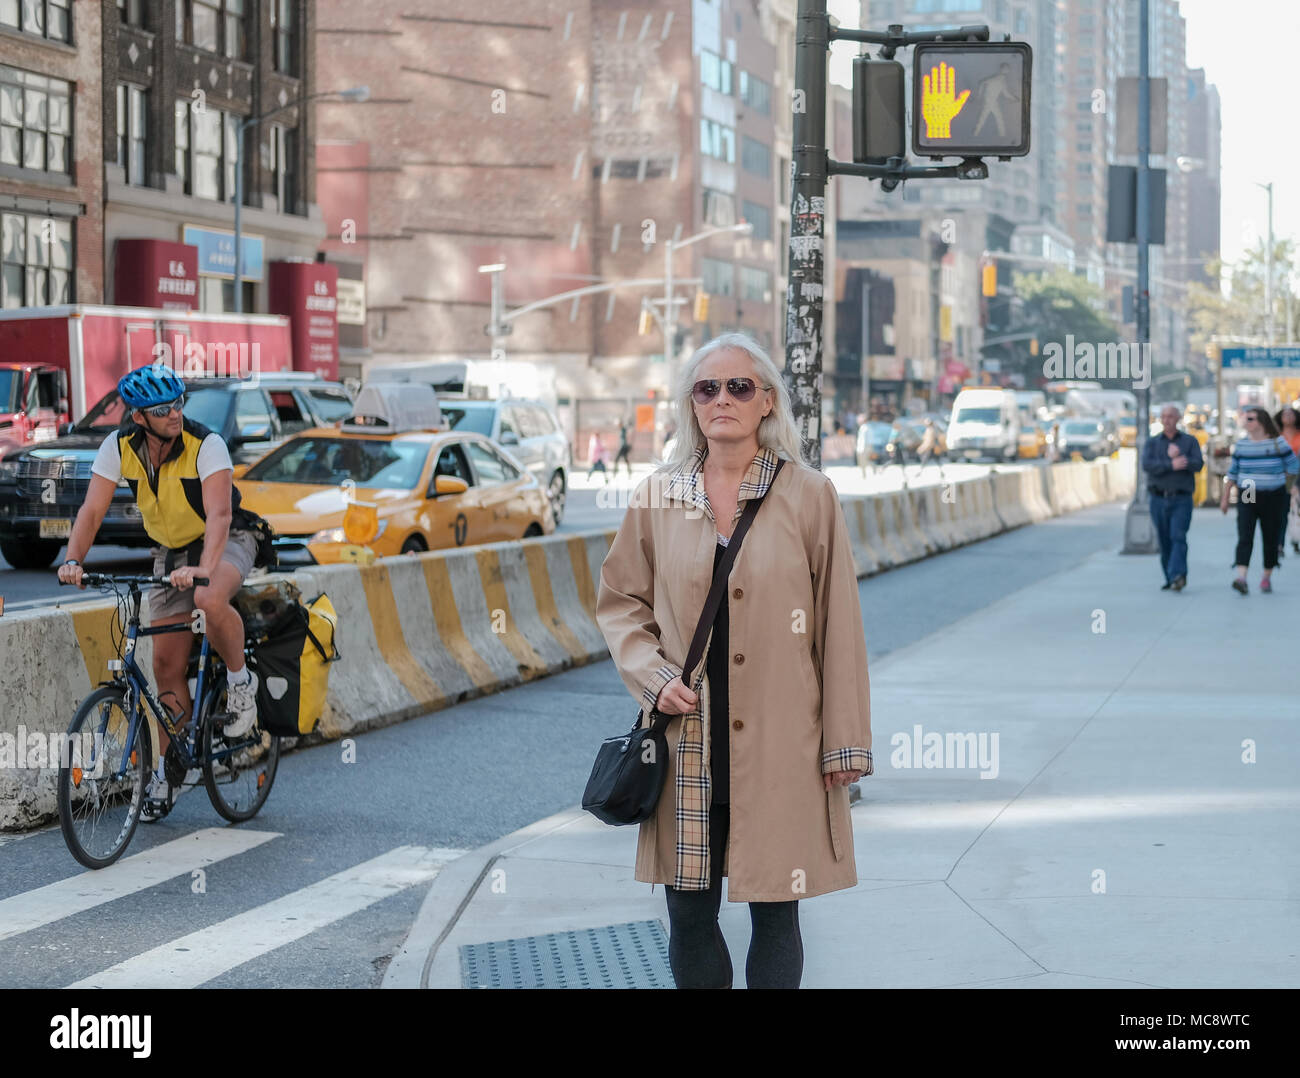 Frau mittleren Alters gesehen, eine berühmte Marke Mantel an einer Kreuzung in New York City. Der Hintergrund zeigt ein Radfahrer und ein Yellow Cab. Stockfoto